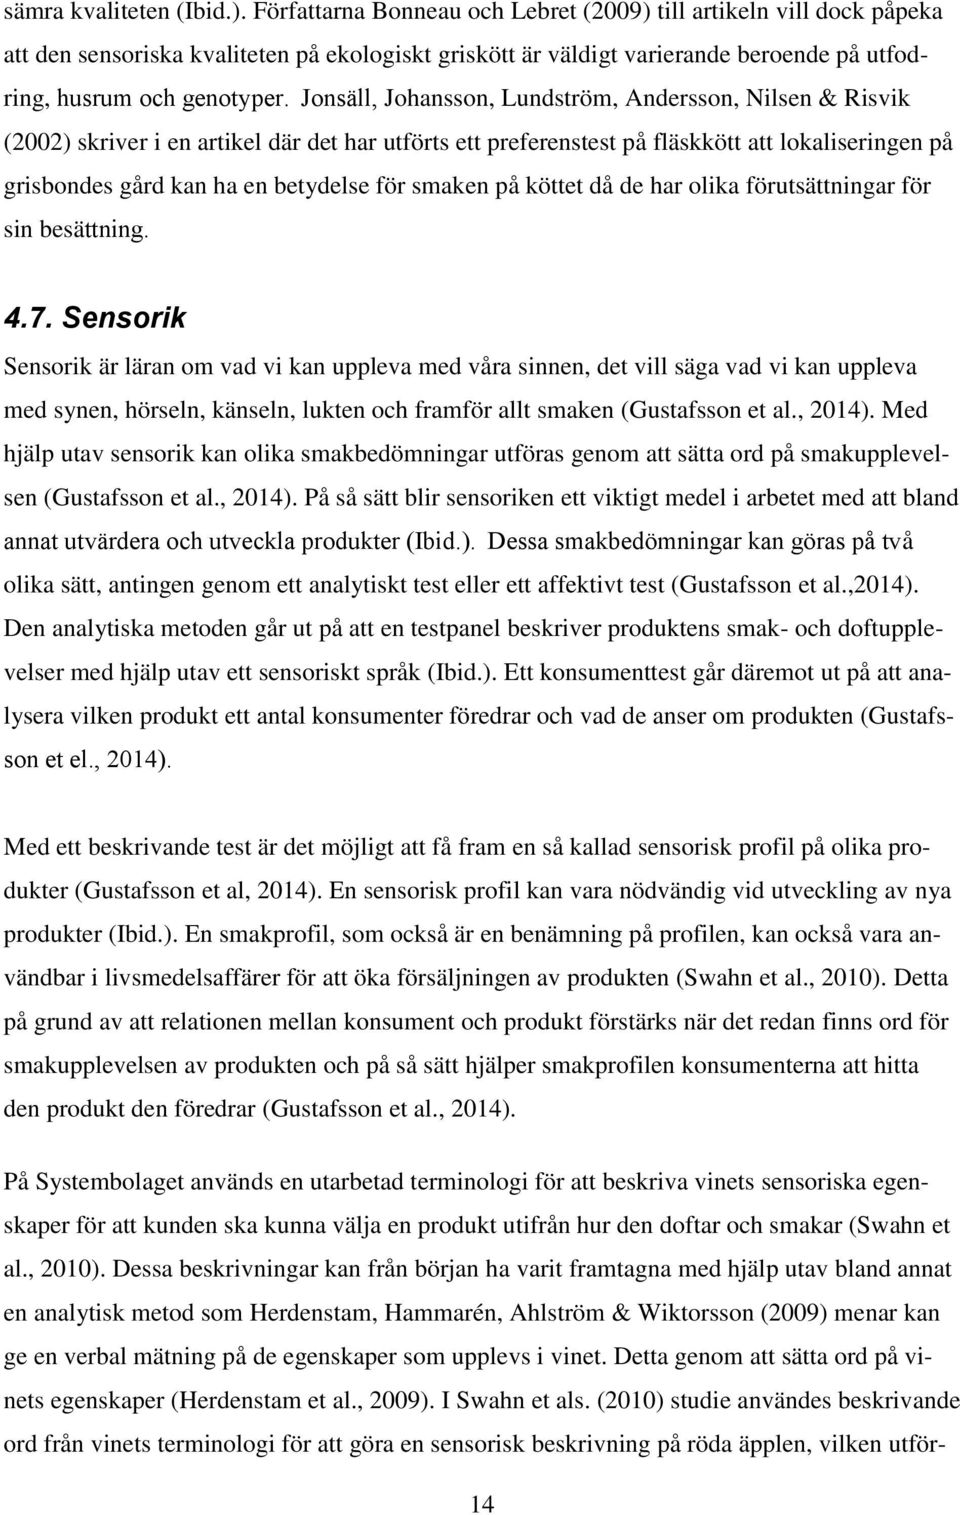 Jonsäll, Johansson, Lundström, Andersson, Nilsen & Risvik (2002) skriver i en artikel där det har utförts ett preferenstest på fläskkött att lokaliseringen på grisbondes gård kan ha en betydelse för